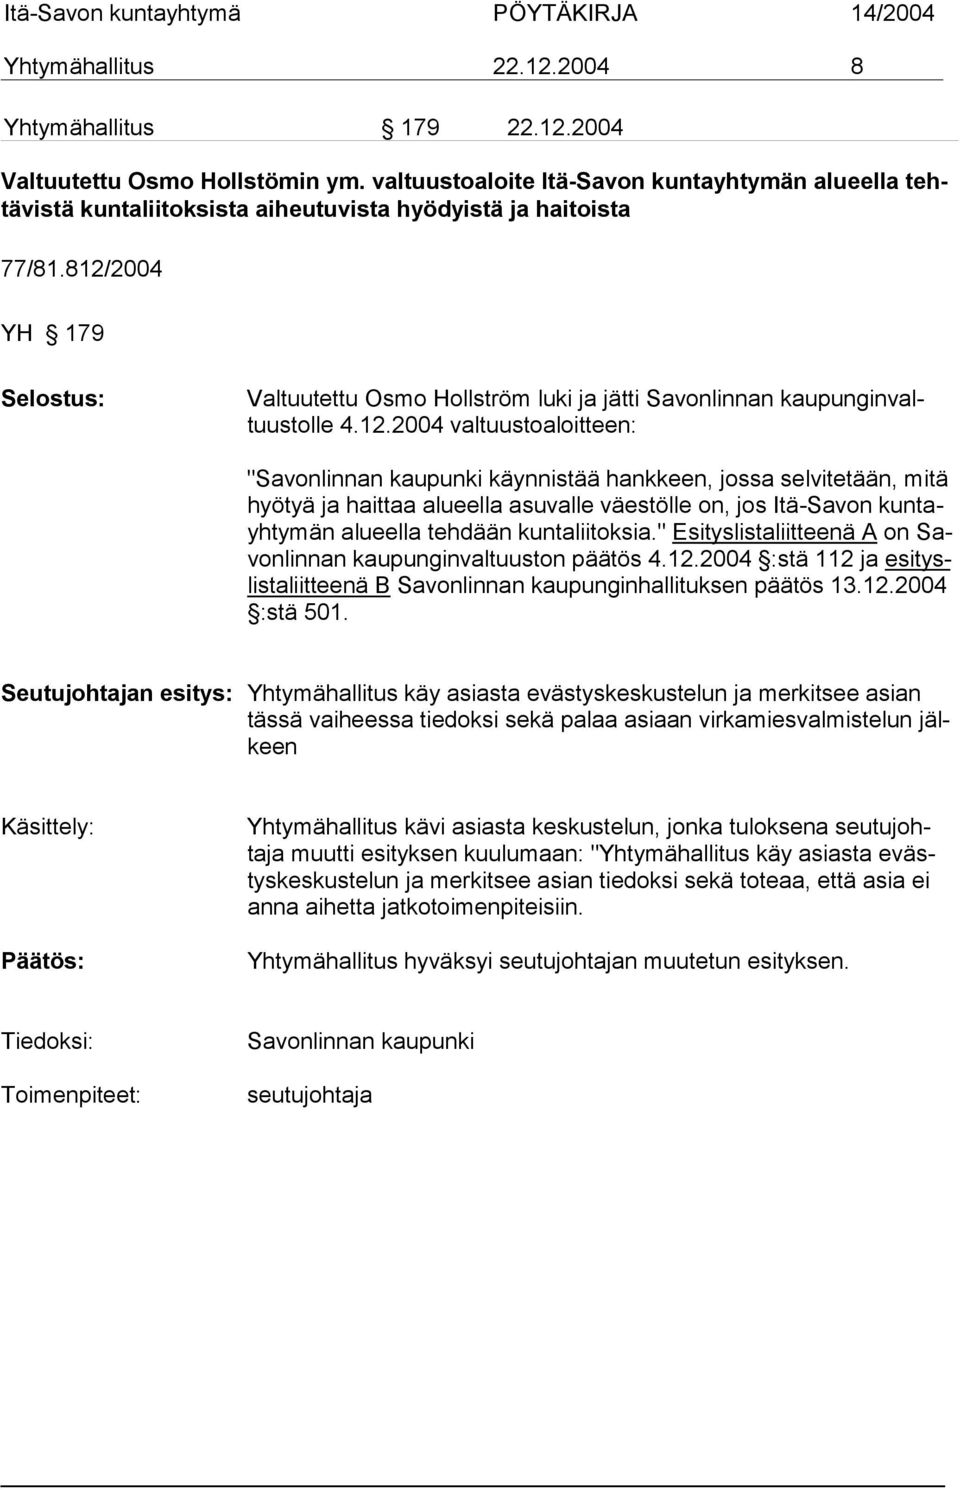 812/2004 YH 179 Valtuutettu Osmo Hollström luki ja jätti Savonlinnan kaupunginvaltuustolle 4.12.2004 valtuustoaloitteen: "Savonlinnan kaupunki käynnistää hankkeen, jossa selvitetään, mi tä hyötyä ja